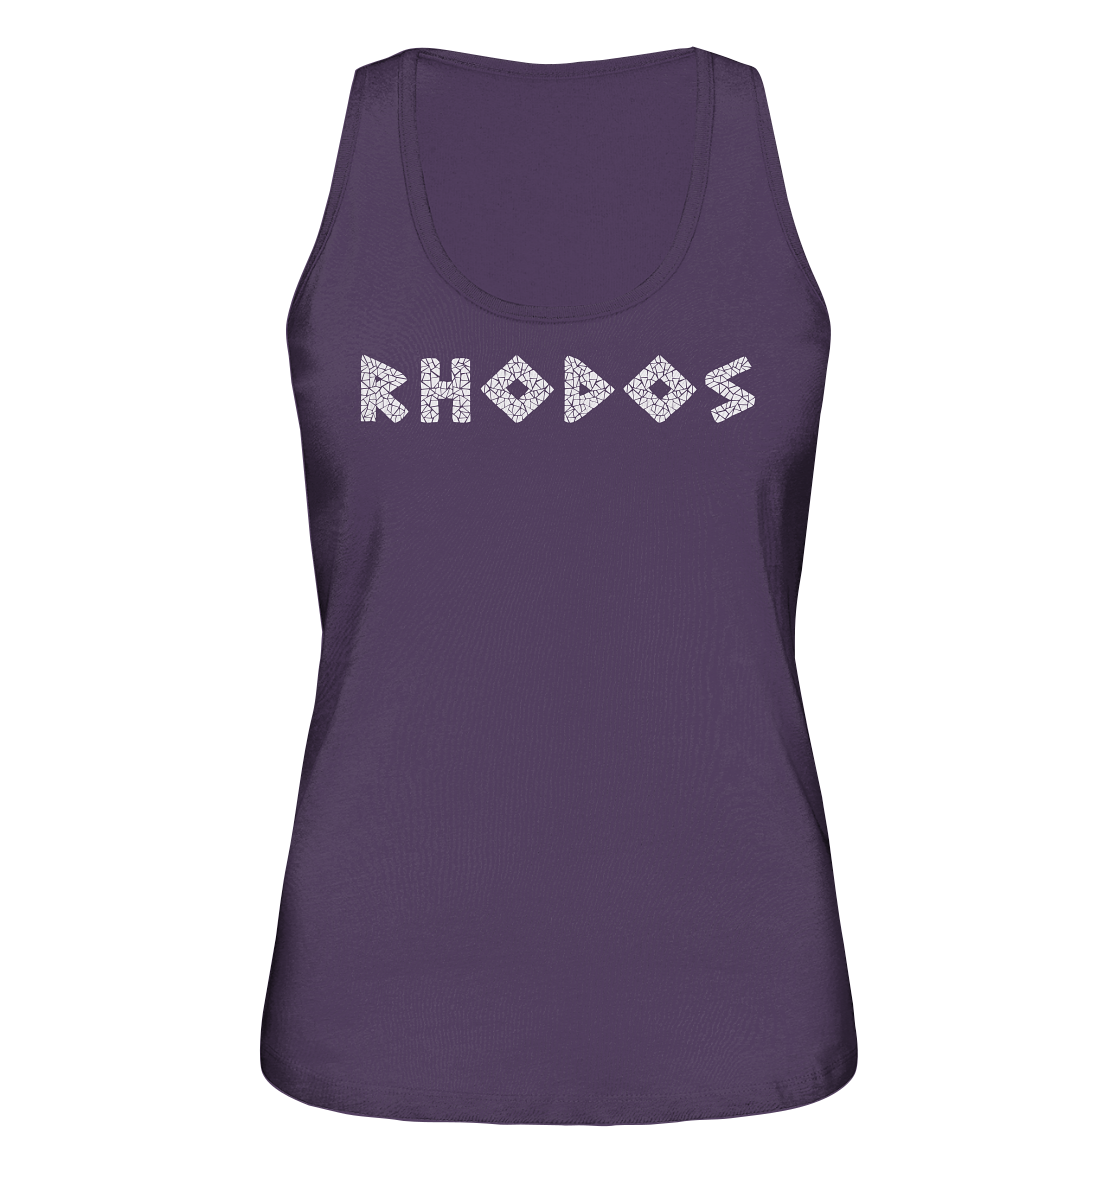 Rhodes Mosaic - Ladies Organic Tank Top